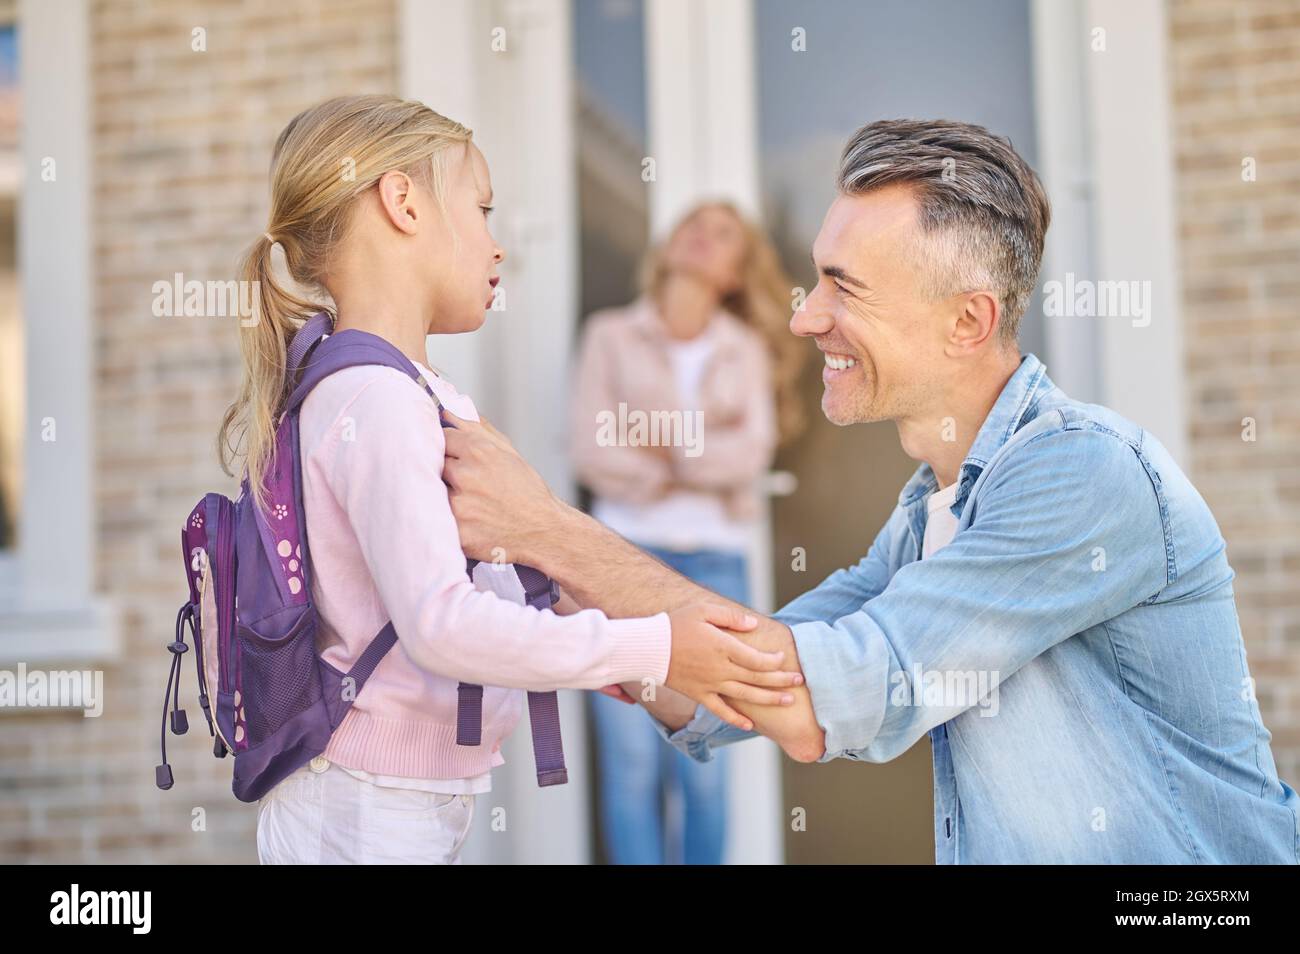 Lächelnder Mann, der sich in der Nähe seiner kleinen Tochter hockend Stockfoto